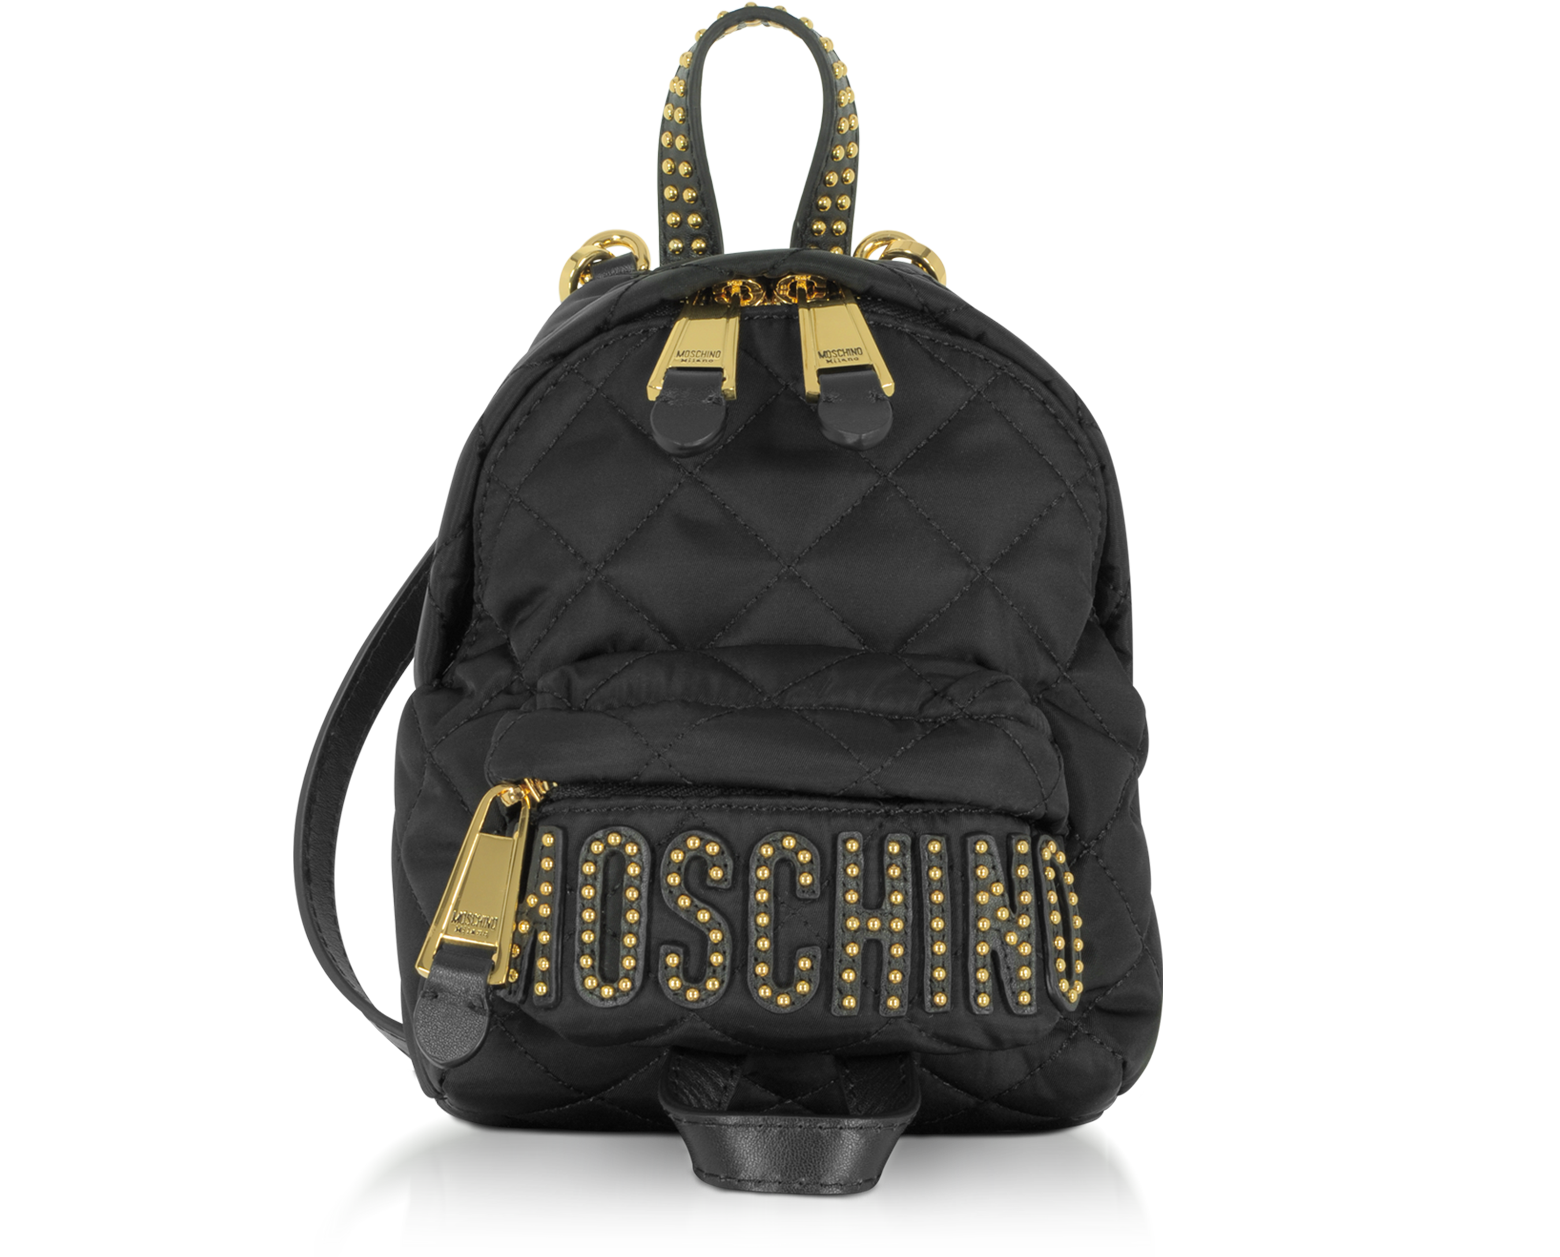 moschino mini backpack